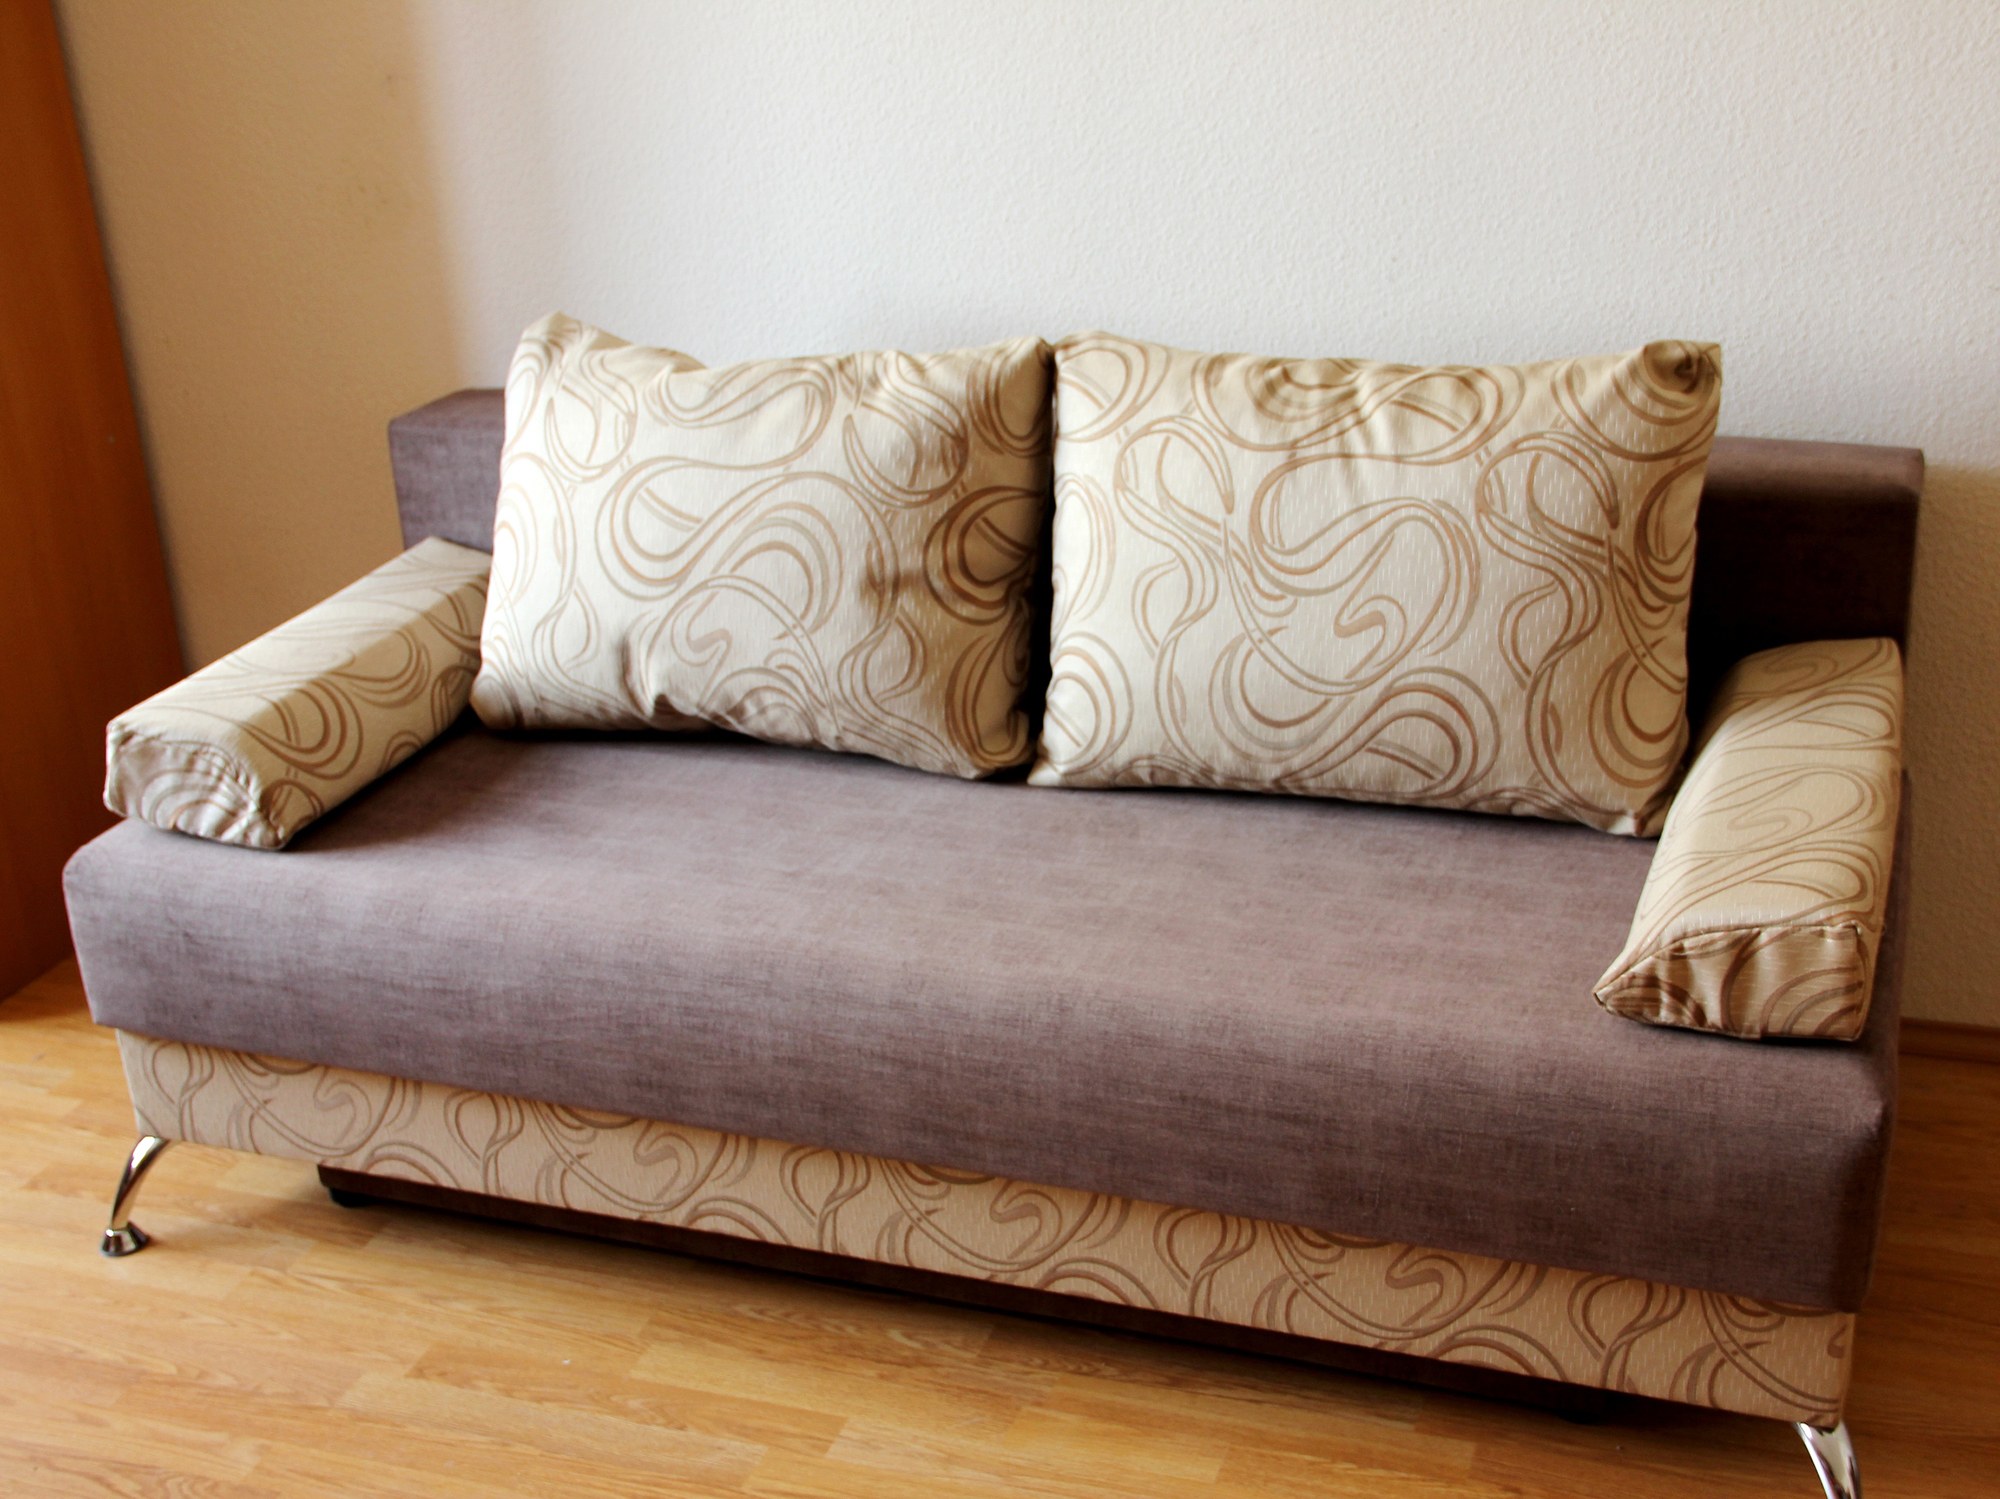 Фото дивана с подушками. Еврокнижка диван 1800/2000. Диван еврокнижка в интерьере. Диван еврокнижка с подушками. Подушка для дивана.